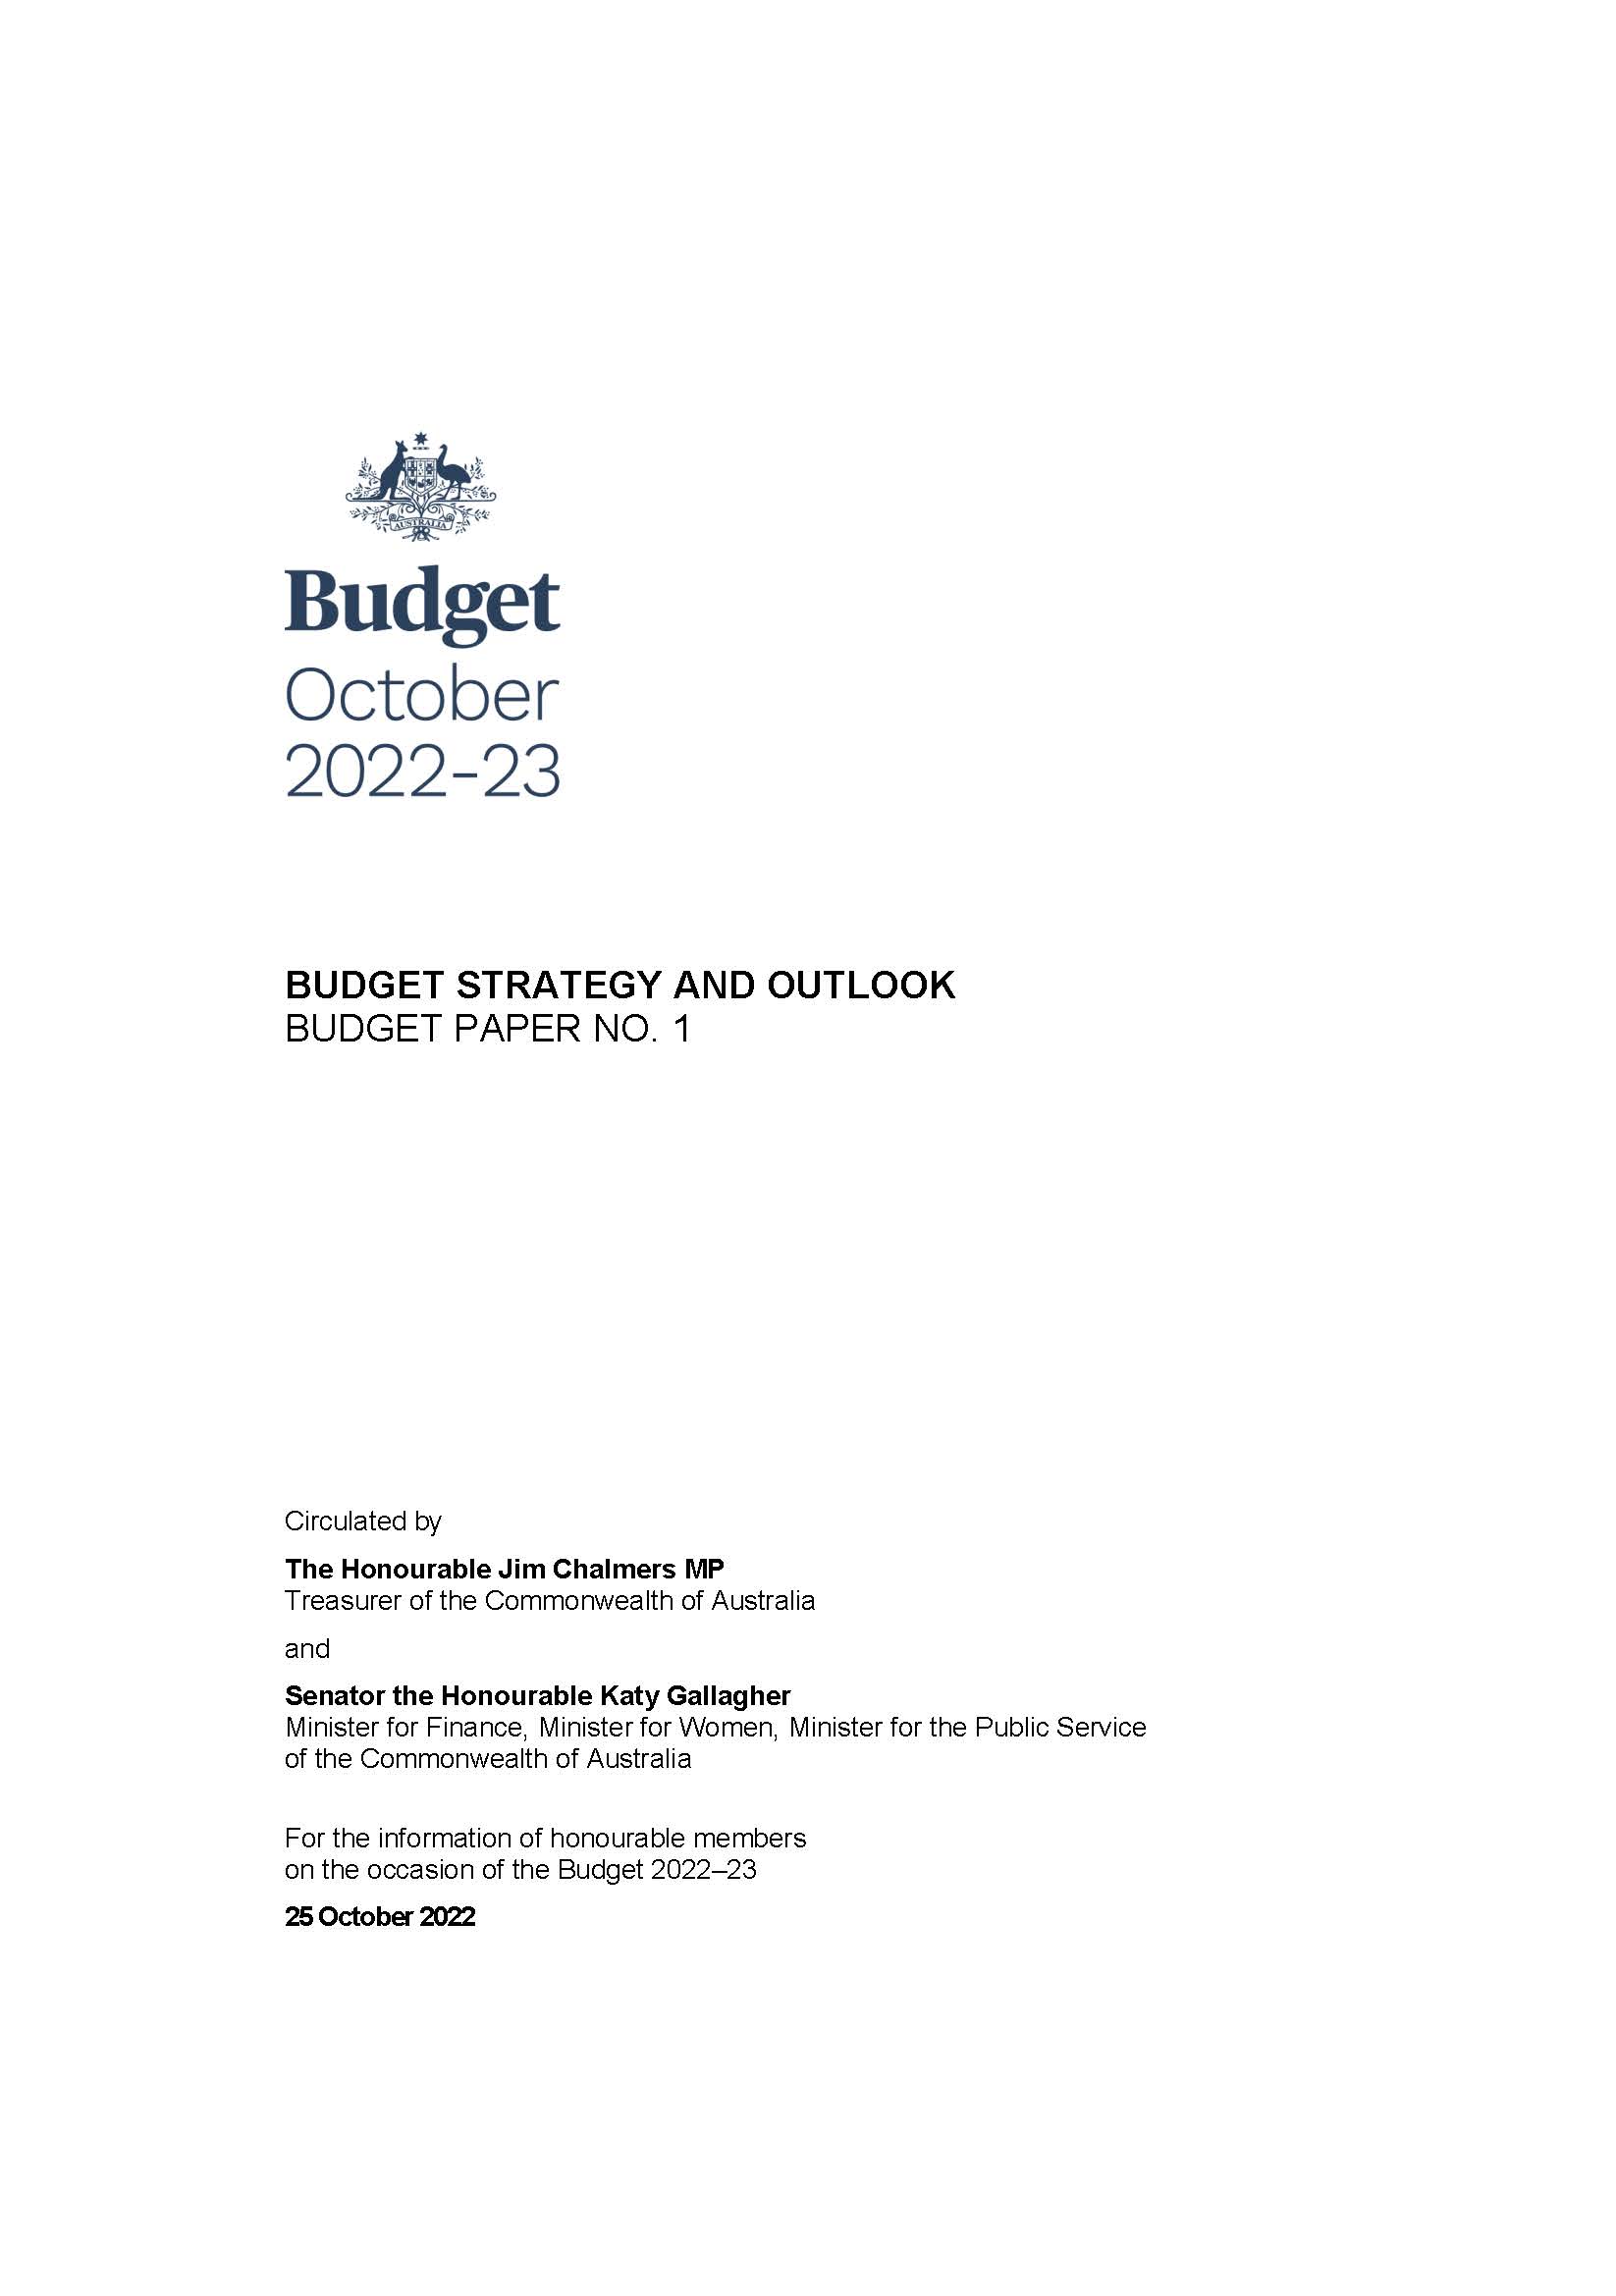 Senate Brief No. 5 - Portfolio Budget Statements 2014-15